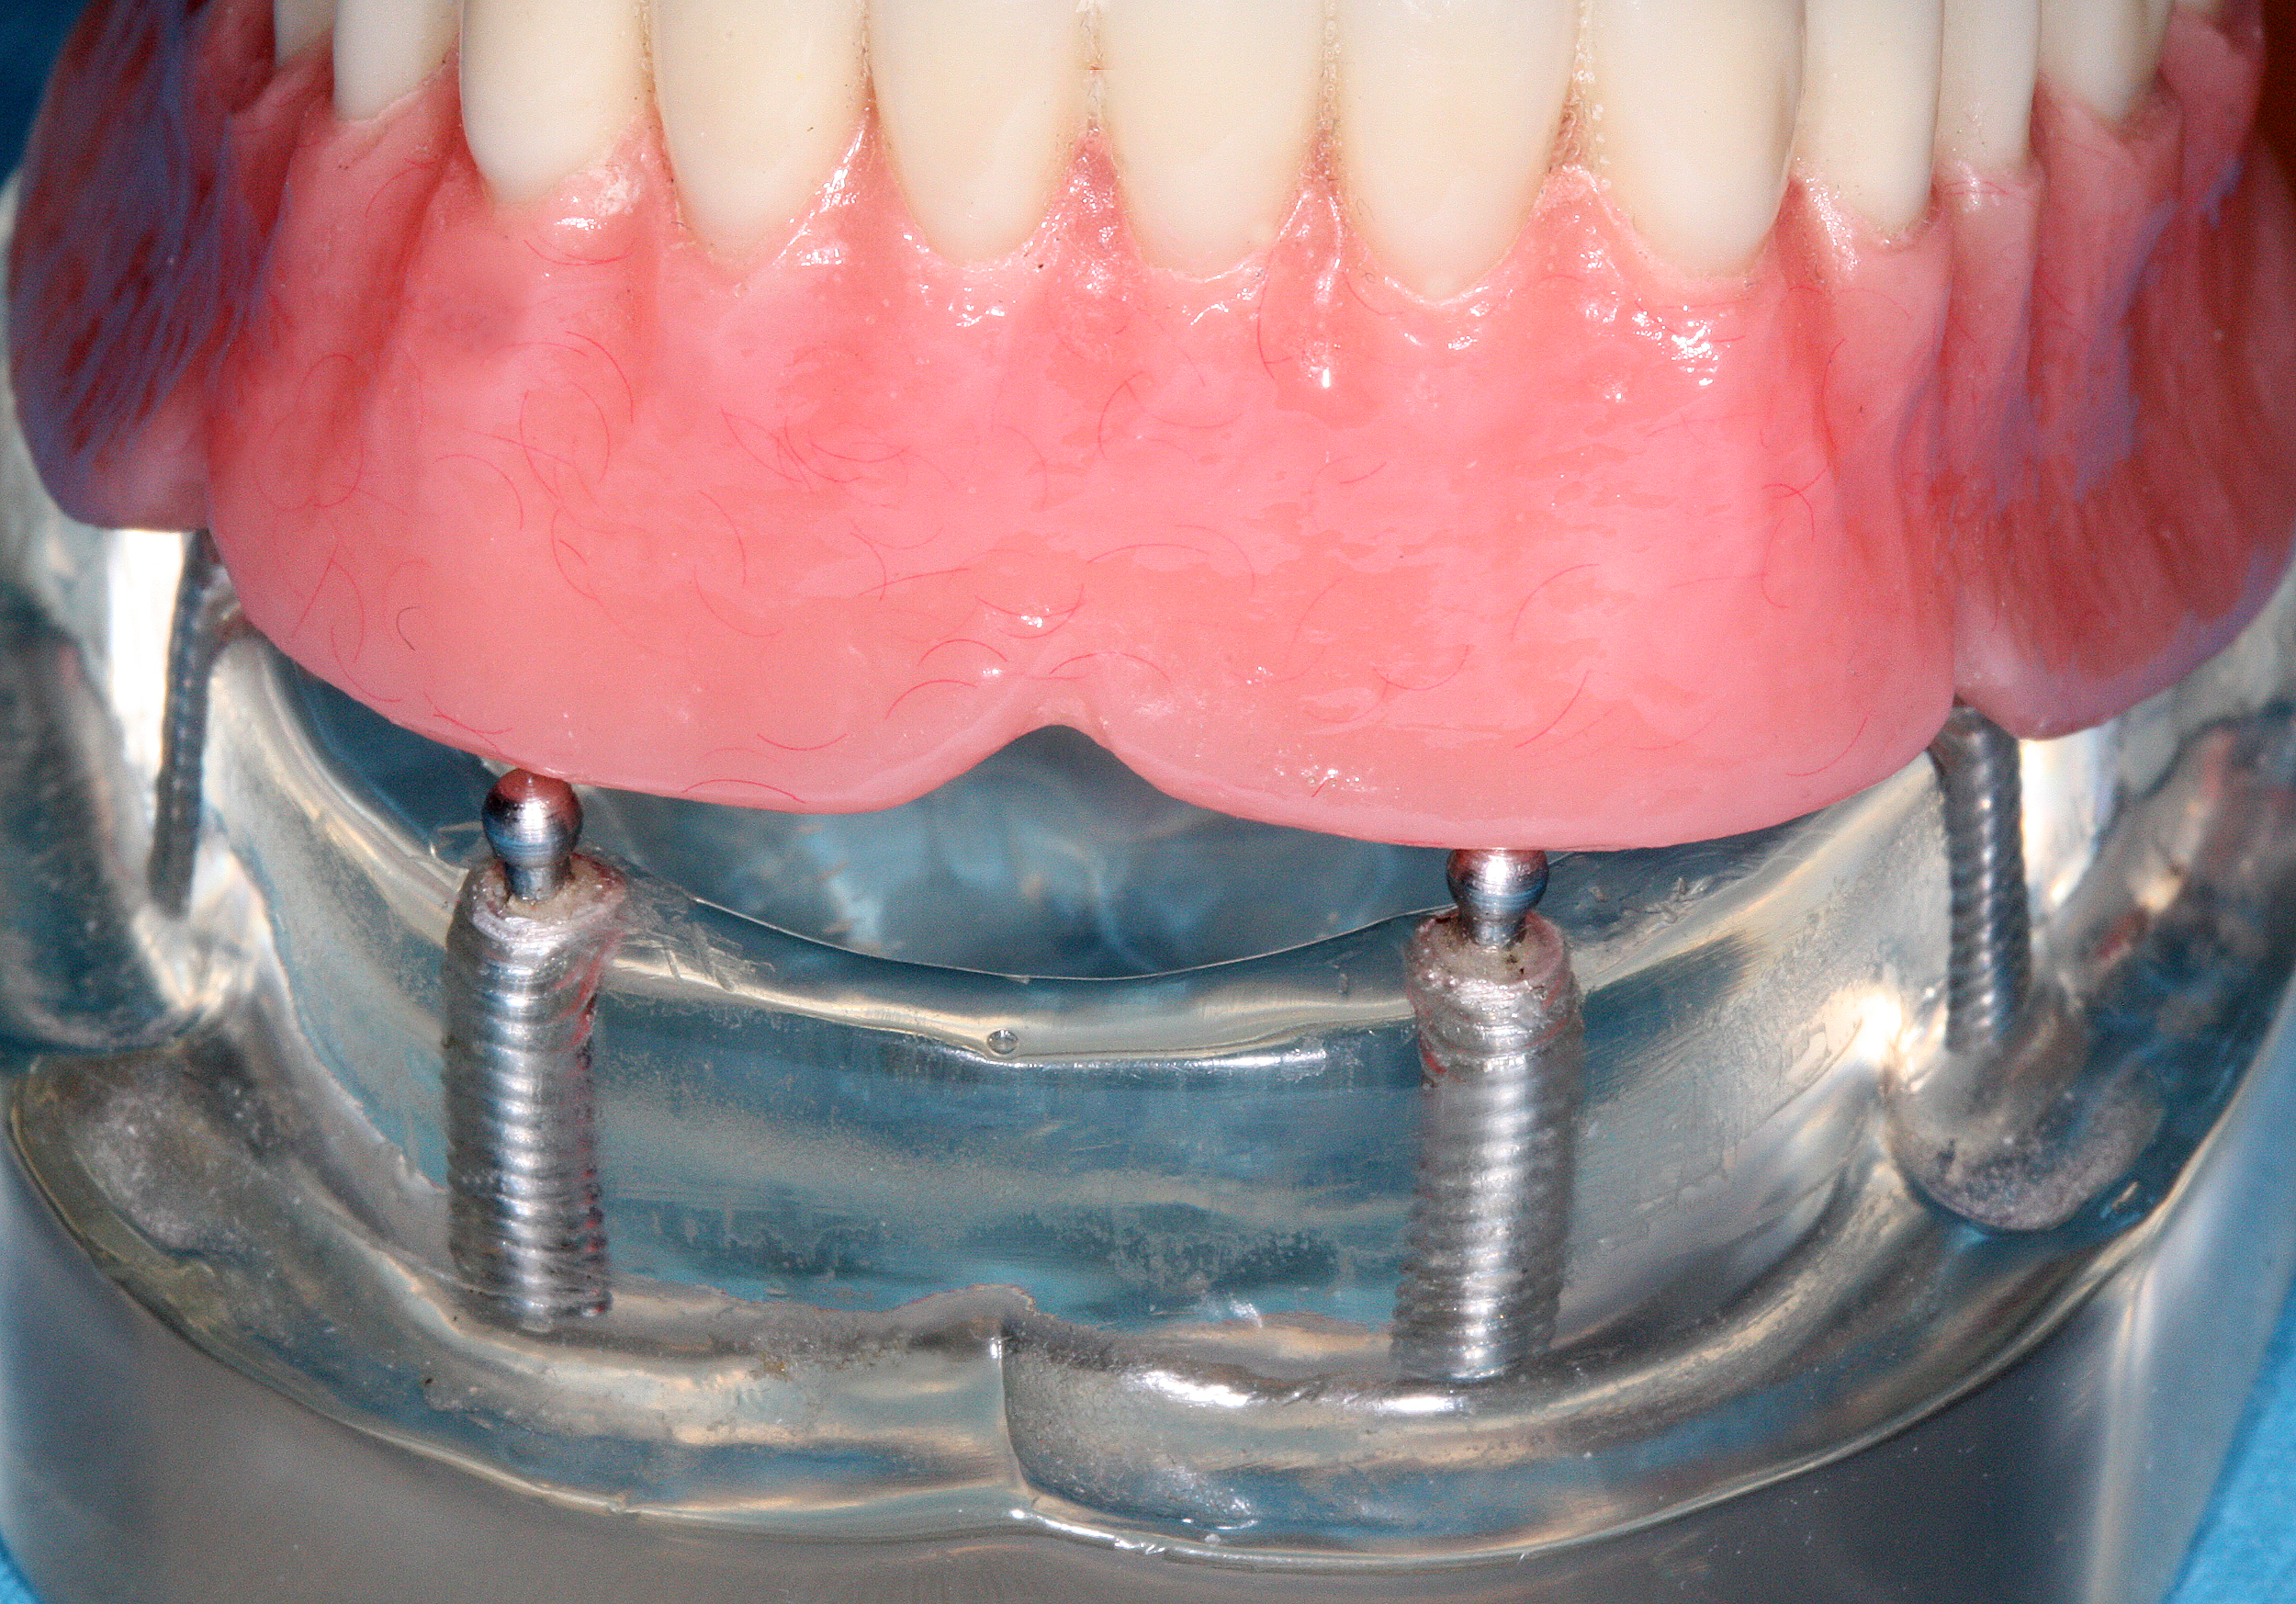 All-on-4 - Mini Dental Implants for Dentures - The Ivory Dental